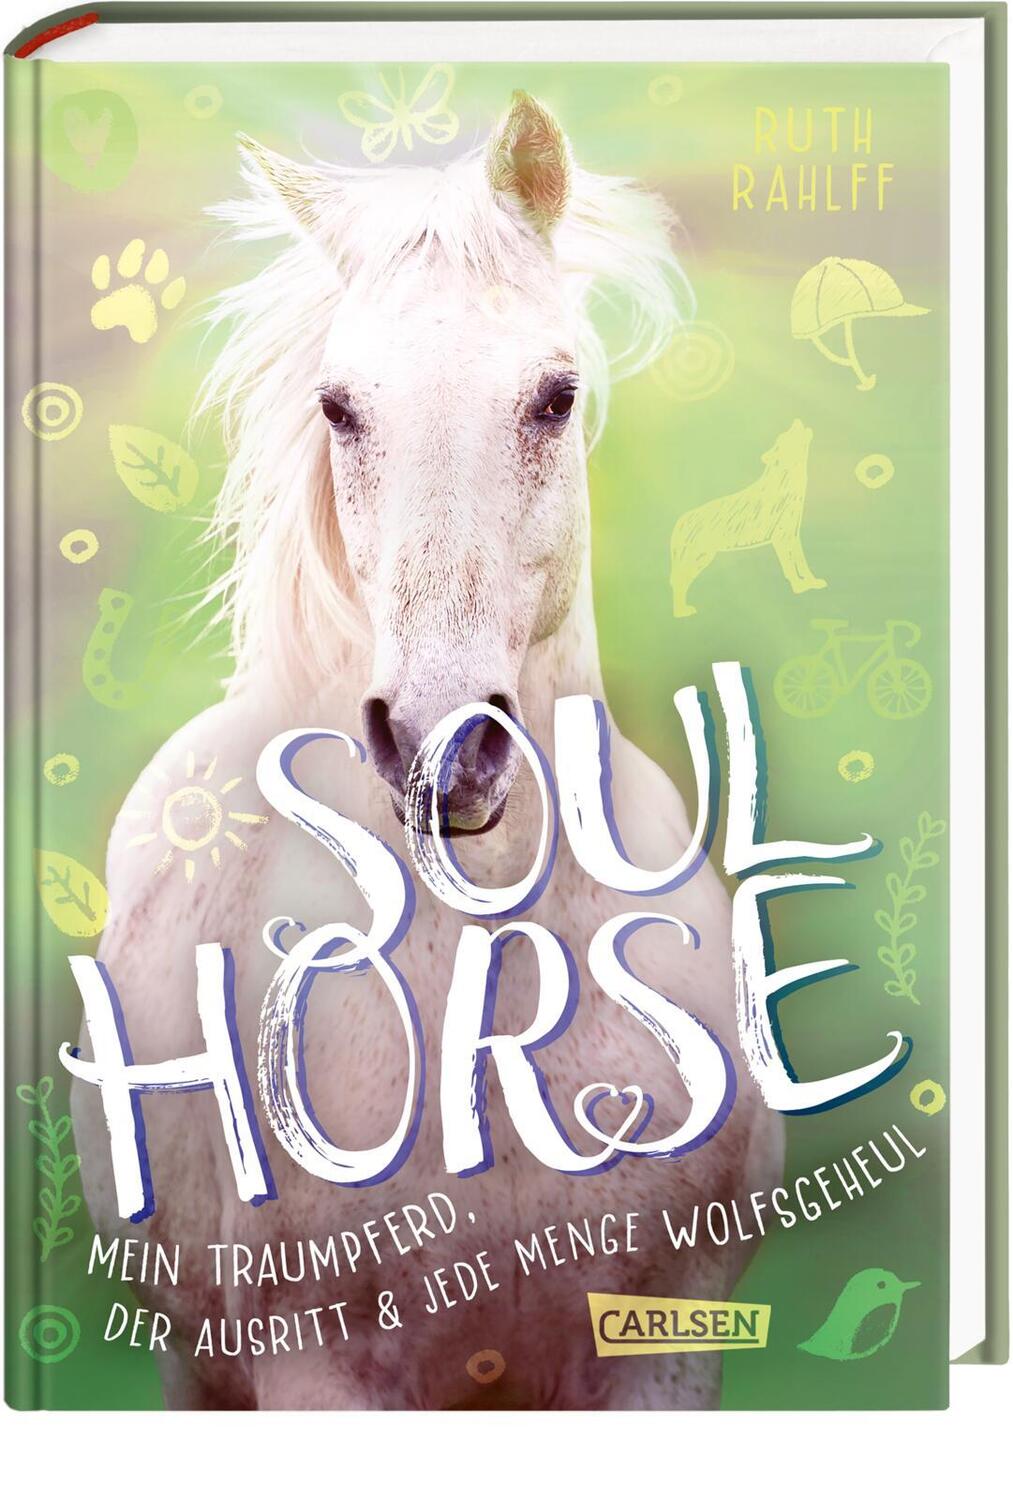 Cover: 9783551651730 | Soulhorse 2: Mein Traumpferd, der Ausritt und jede Menge Wolfsgeheul